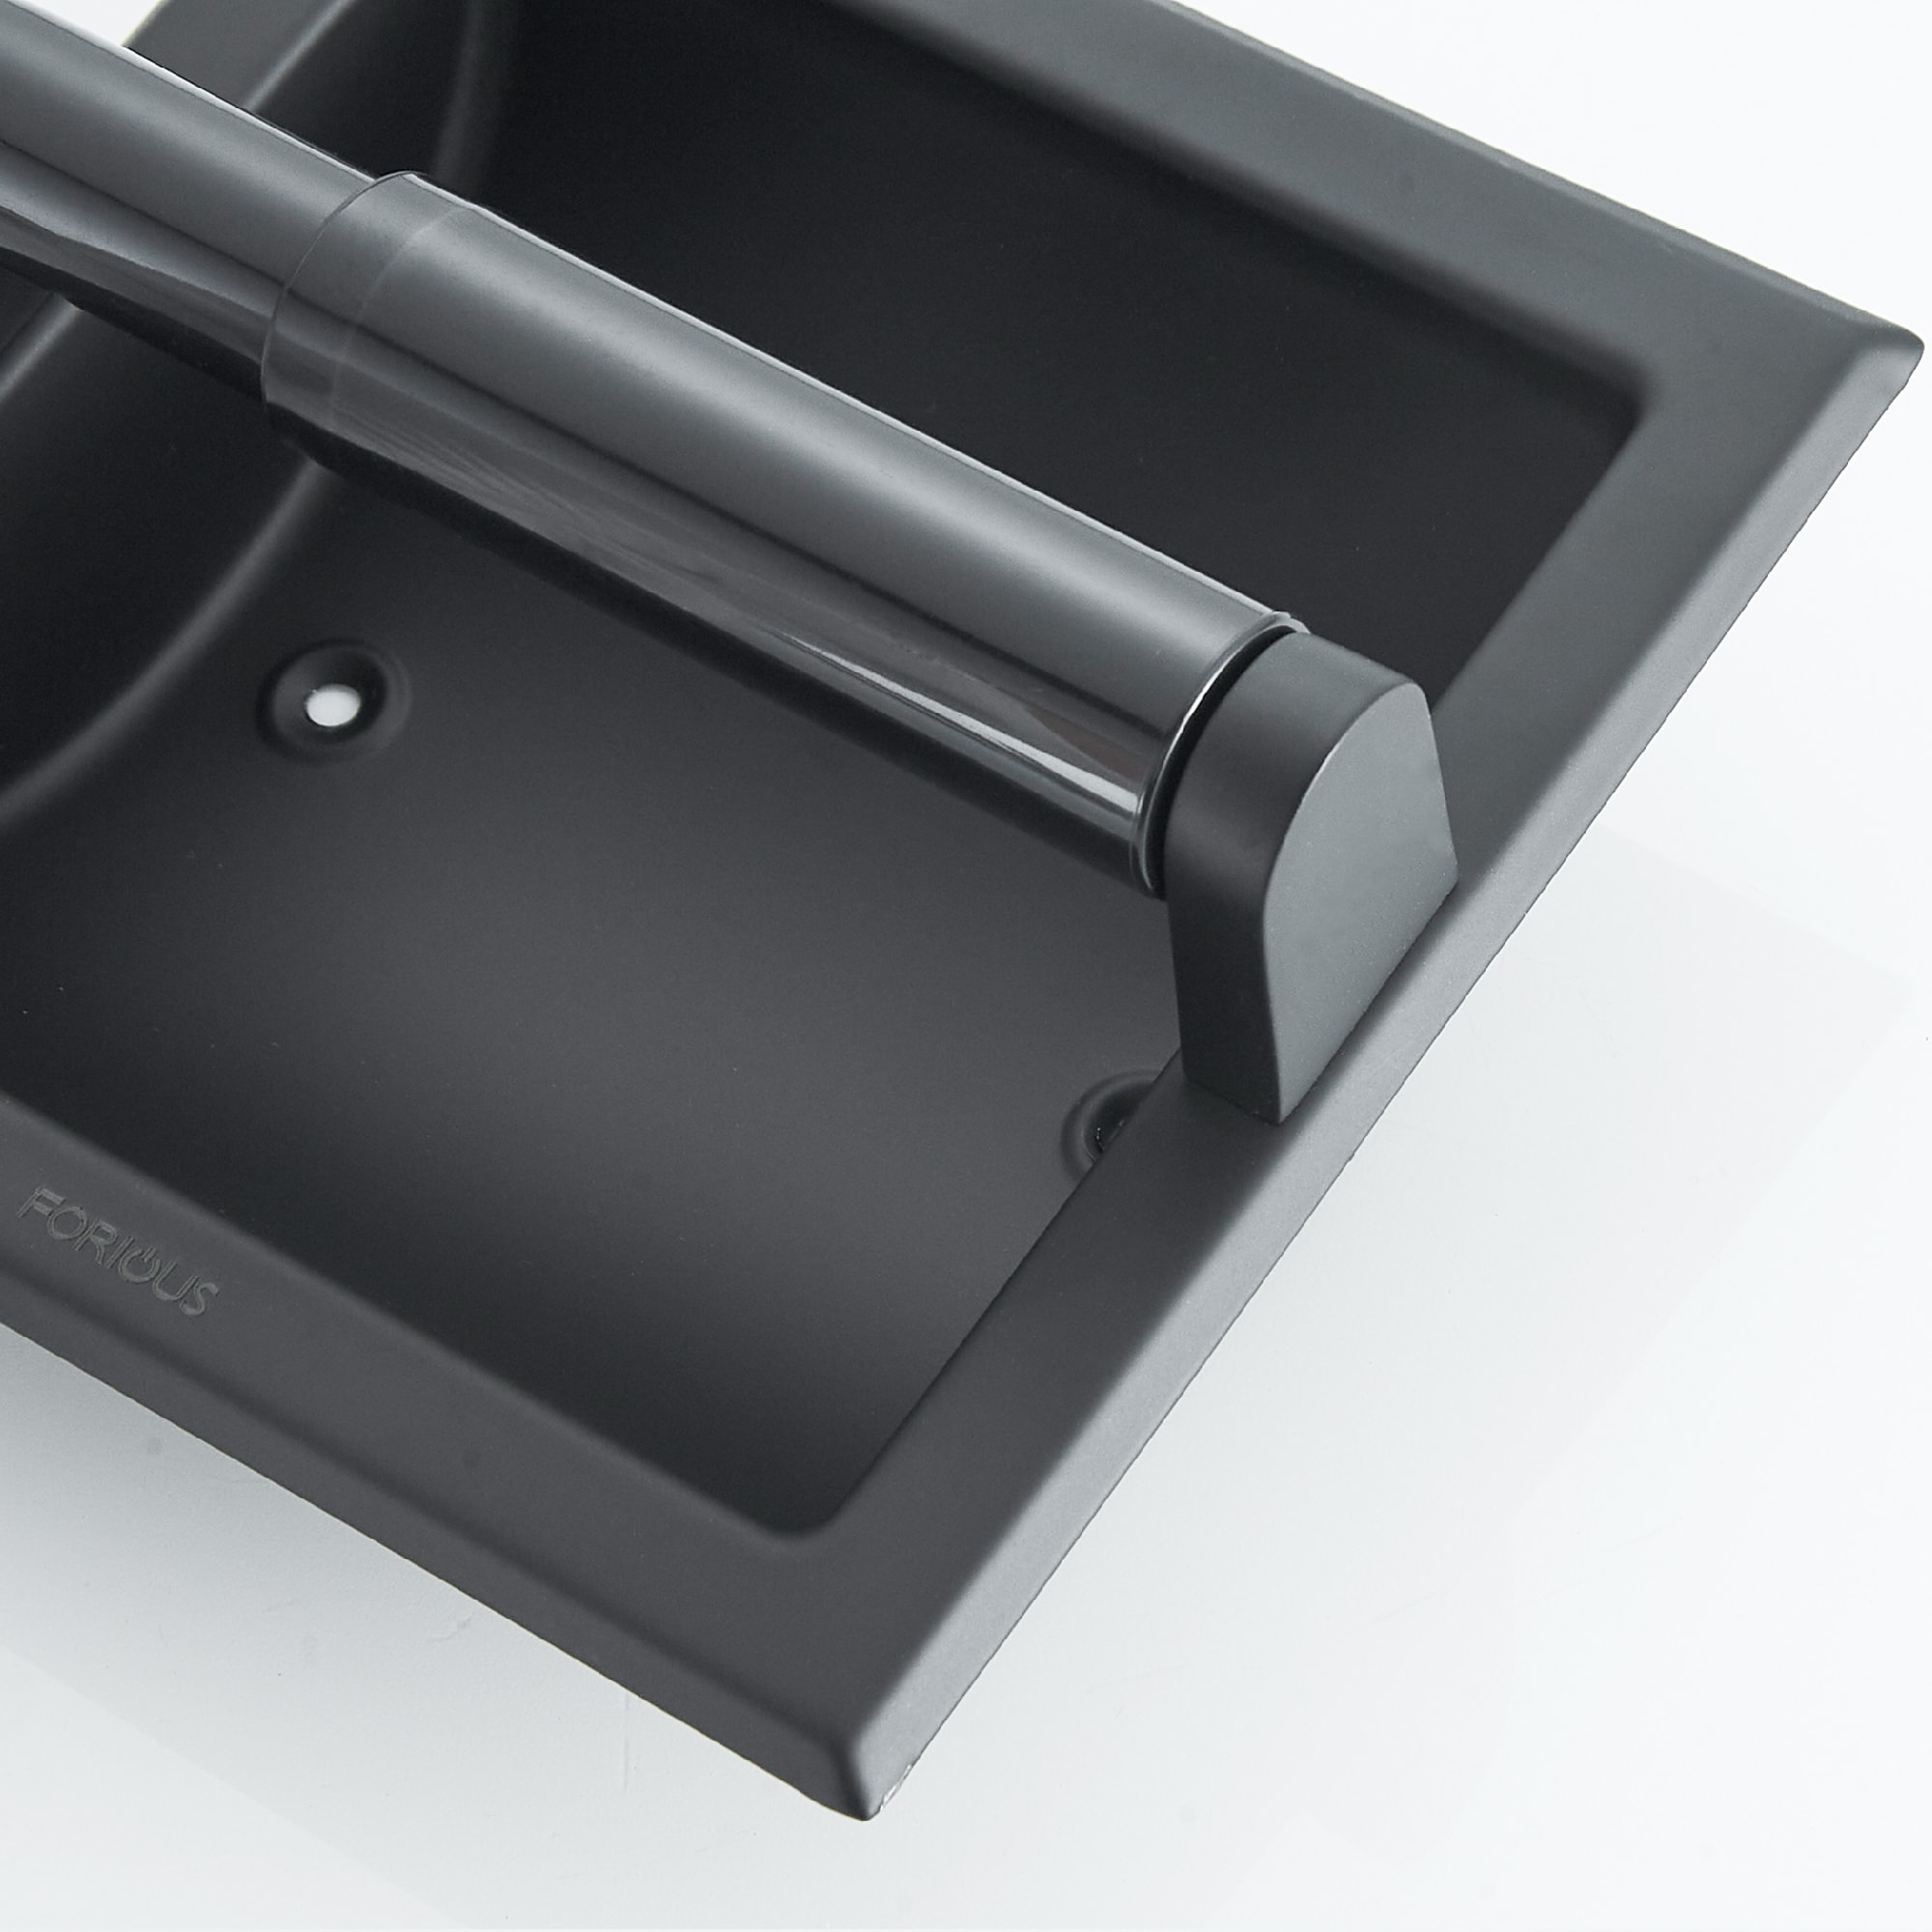 Lentz Toilet Paper Holder - Matte Black | Zinc | Signature Hardware 466405